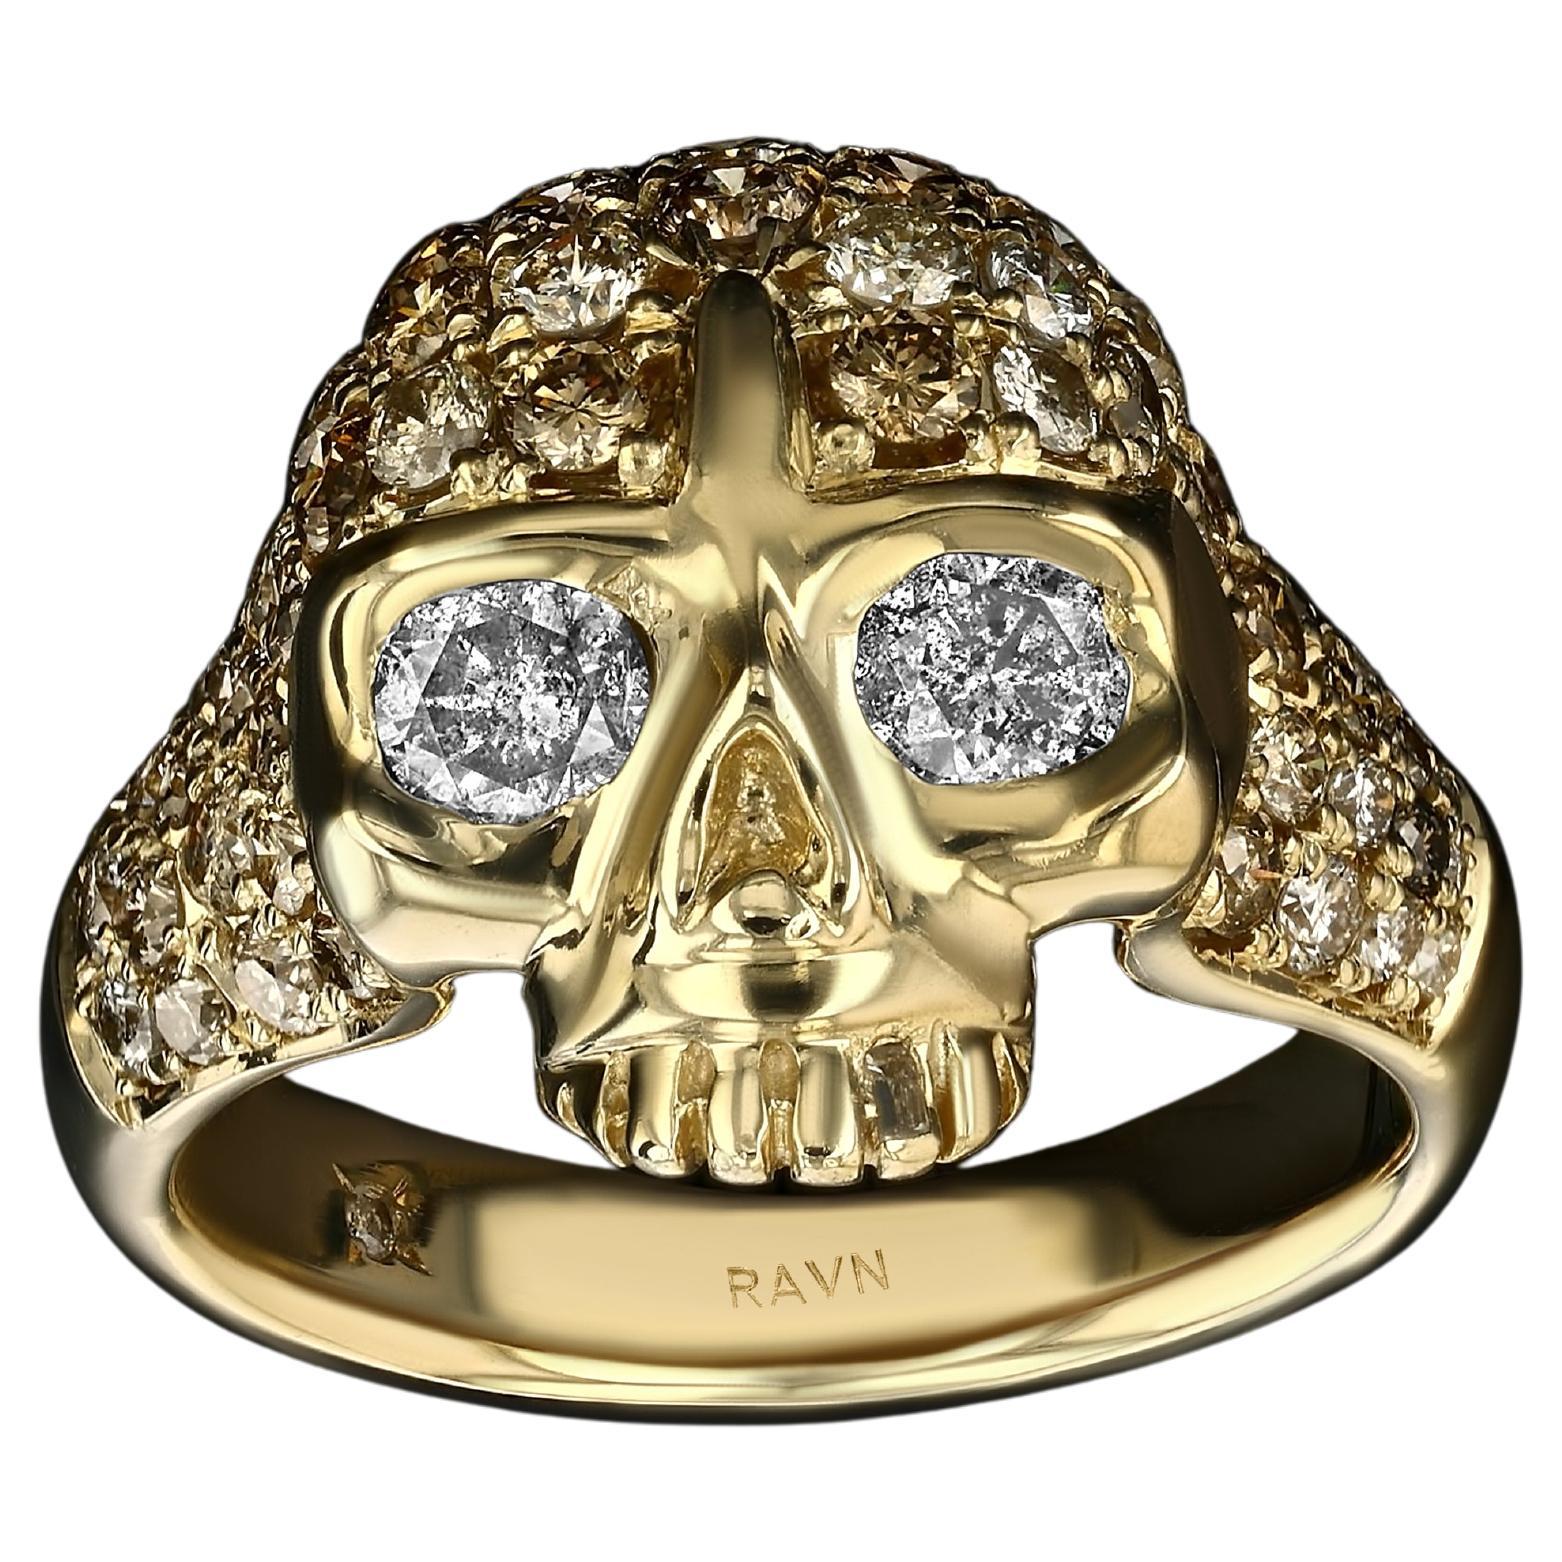 House of RAVN, 18k Gold Hand Carved Bling Petite Skull Ring with Diamond Eyes